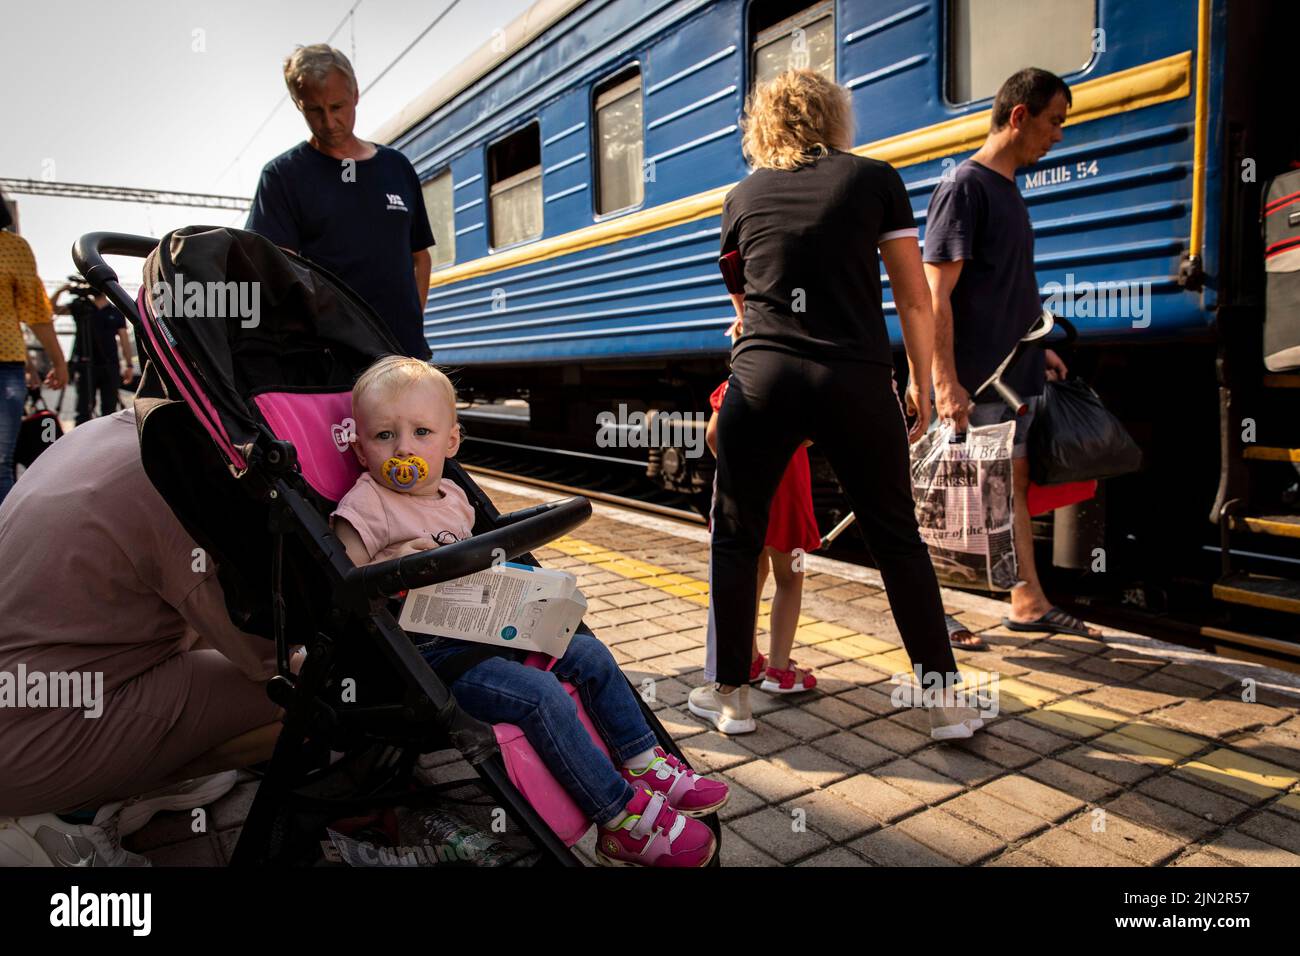 Ein Baby, das im Kinderwagen sitzt, wartet auf den Evakuierungszug mit seinen Eltern am Bahnhof Pokrovsk. Inmitten der intensivierten Kämpfe im östlichen Teil der Ukraine intensiviert die Ostukraine nun ihre zivile Evakuierung, da Millionen ukrainischer Familien aus dem immer näher rückt Krieg evakuiert wurden, da viele von ihnen in den westlichen Teil des Landes verlagert werden.Laut den Vereinten Nationen werden die meisten von ihnen in den Westen des Landes umgesiedelt. Mindestens 12 Millionen Menschen sind seit dem russischen Einmarsch in die Ukraine aus ihrer Heimat geflohen, während sieben Millionen Menschen innerhalb des Landes vertrieben werden. (Foto von Alex Chan Stockfoto